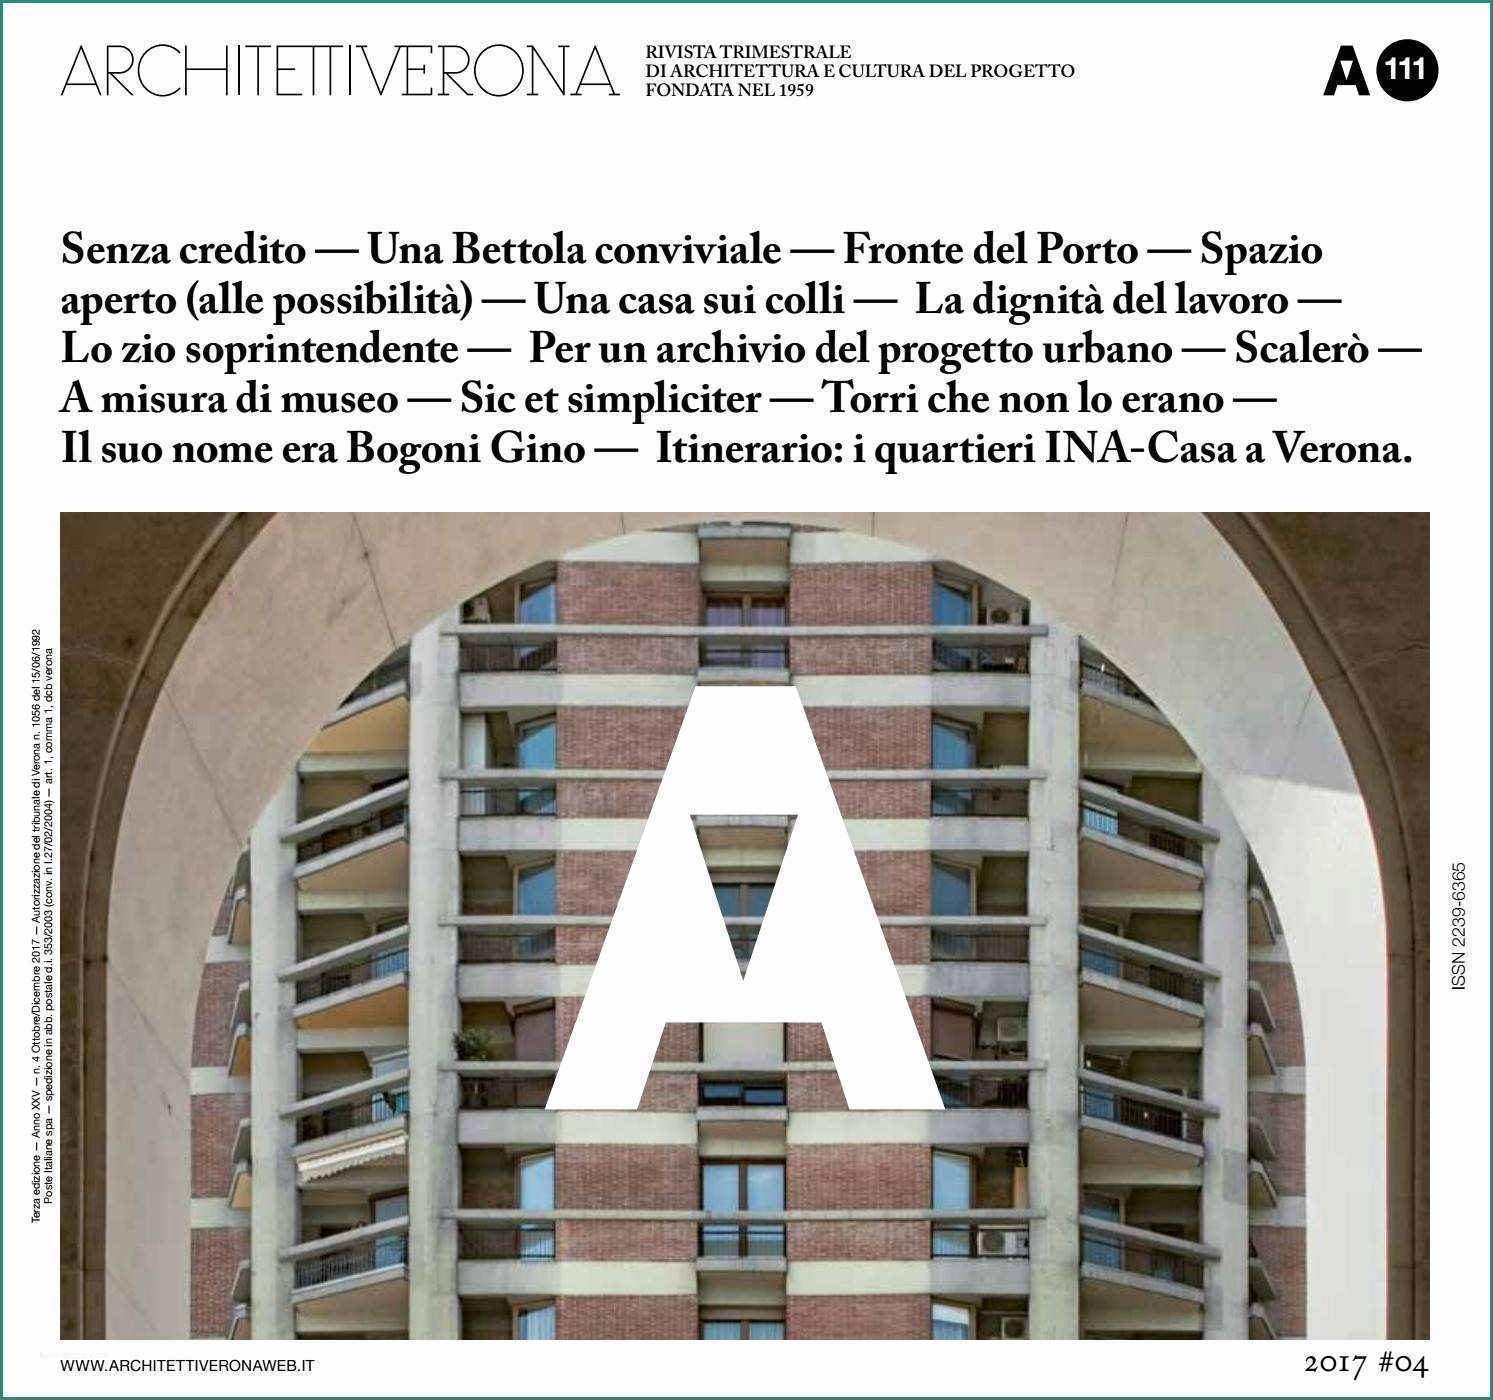 Soglie In Marmo Per Balconi E Architettiverona 111 by Architettiverona issuu